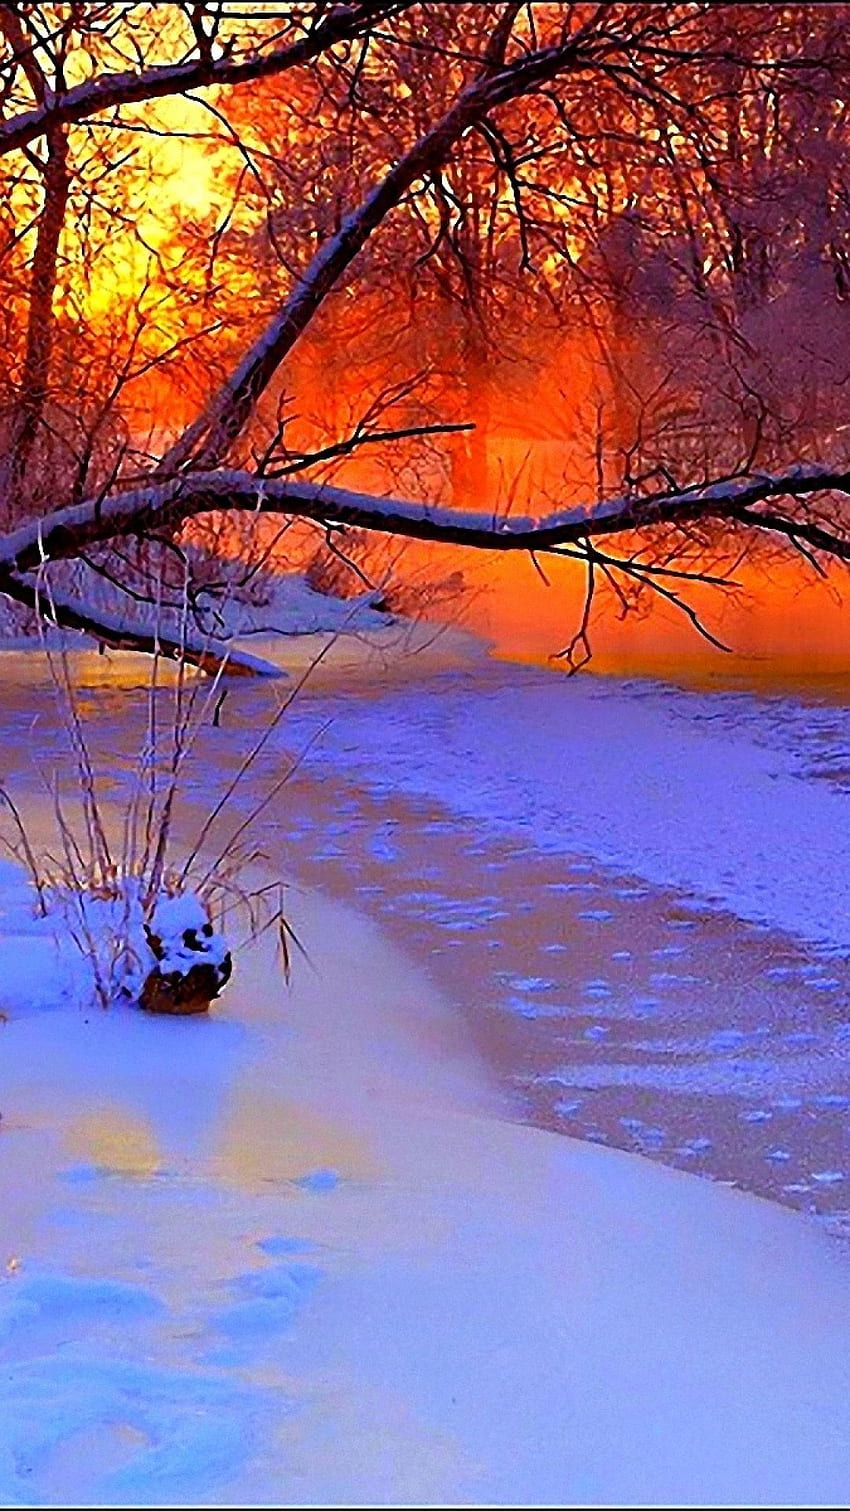 Winter sunset. Winter sunset, Winter scenery, Winter scenes, Snow ...